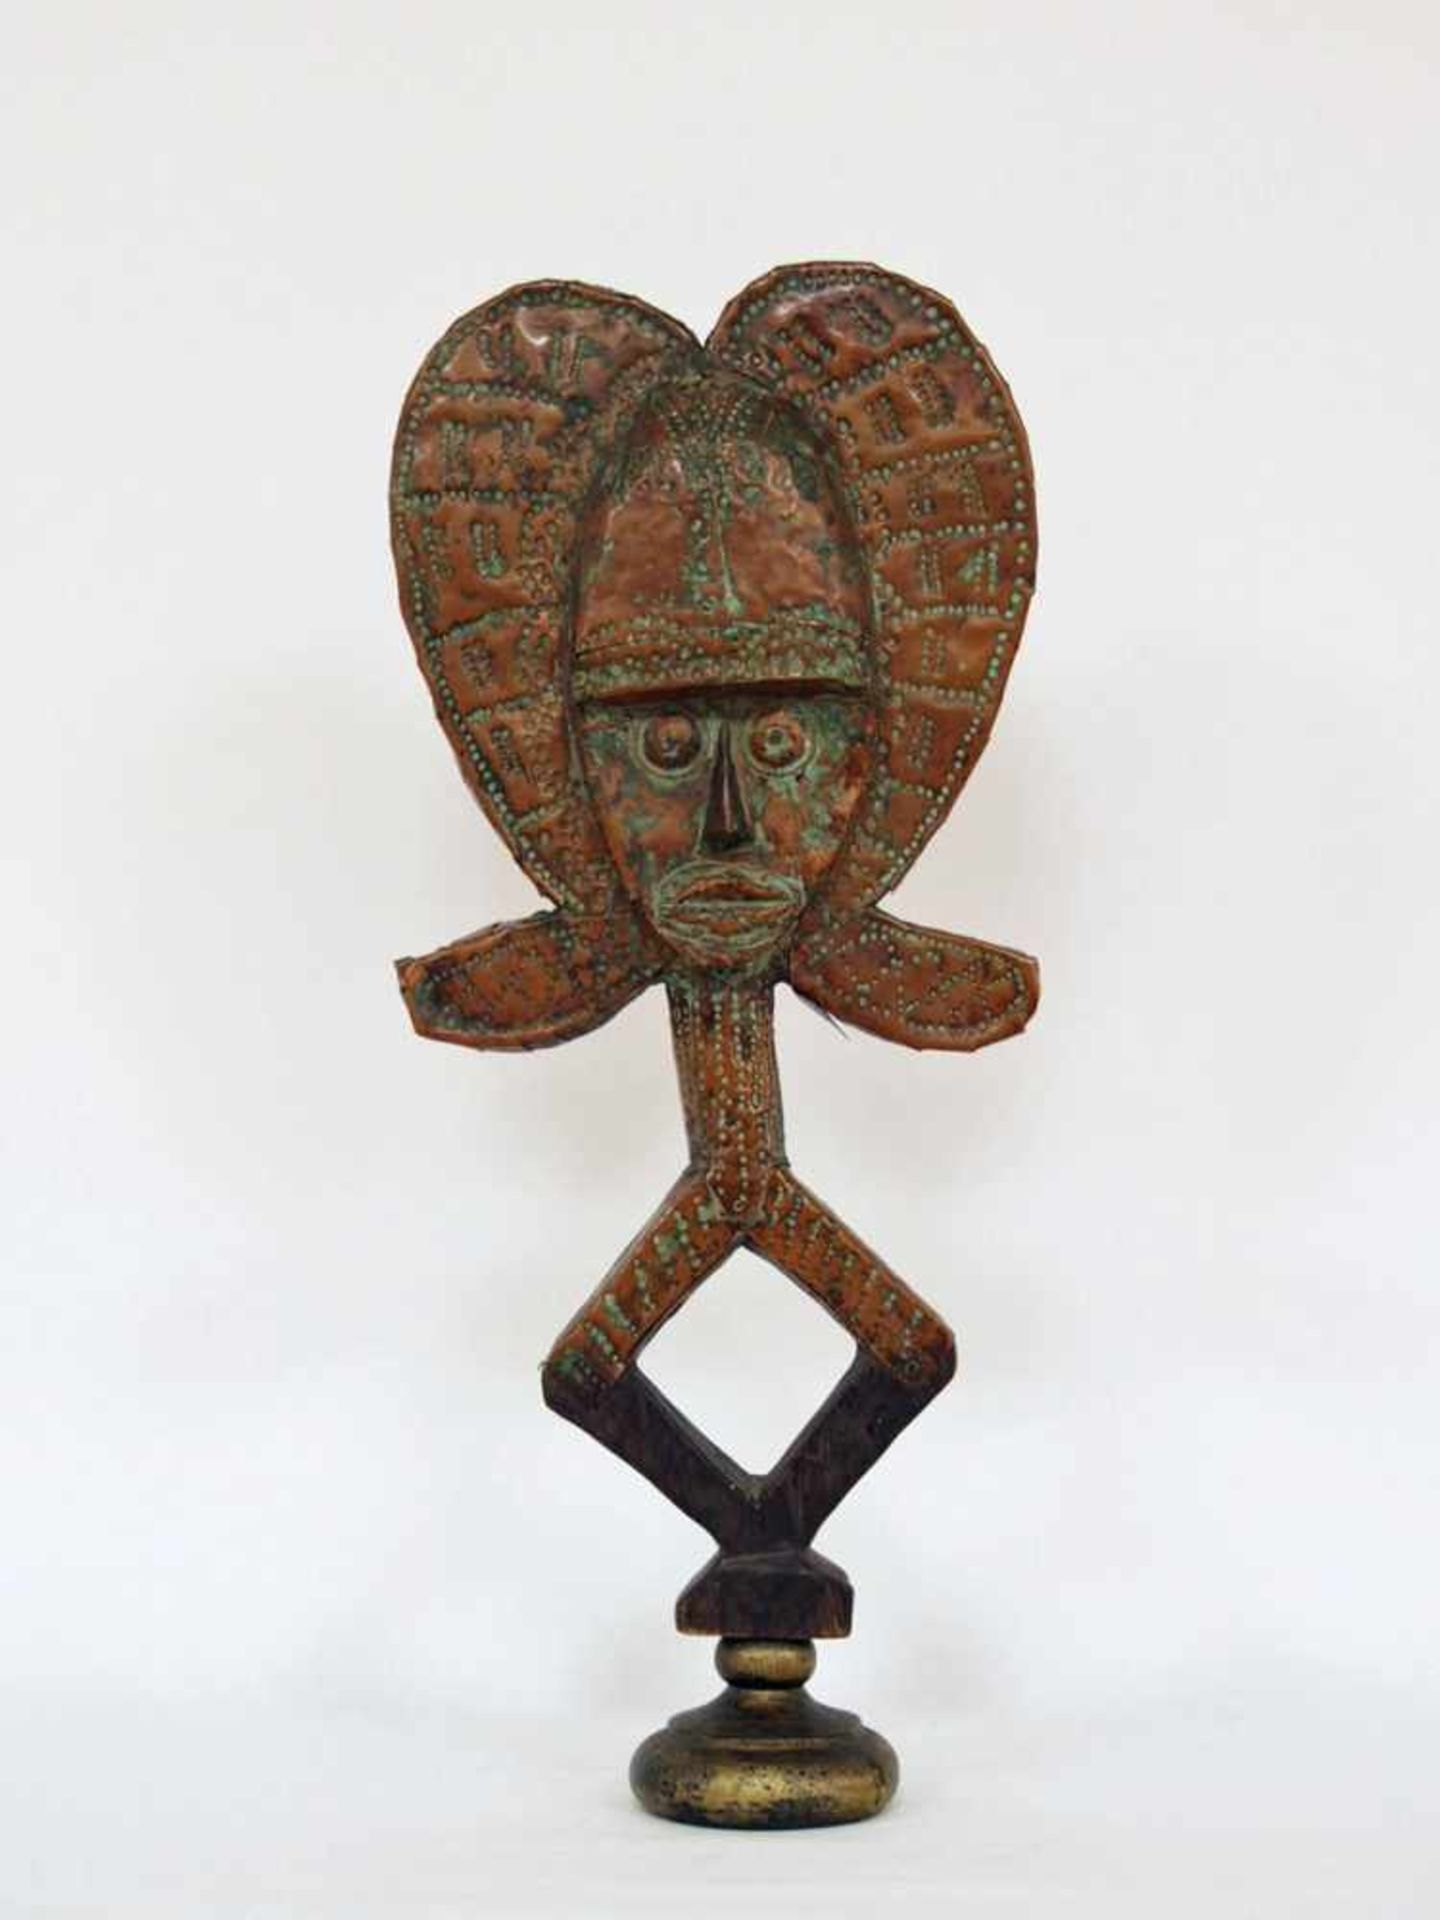 Bakota-ReliquienstatueHolz, geschnitzt, gehämmertes Bronzeblech, Kongo 20. Jh., Höhe 72 cm- - -25.00